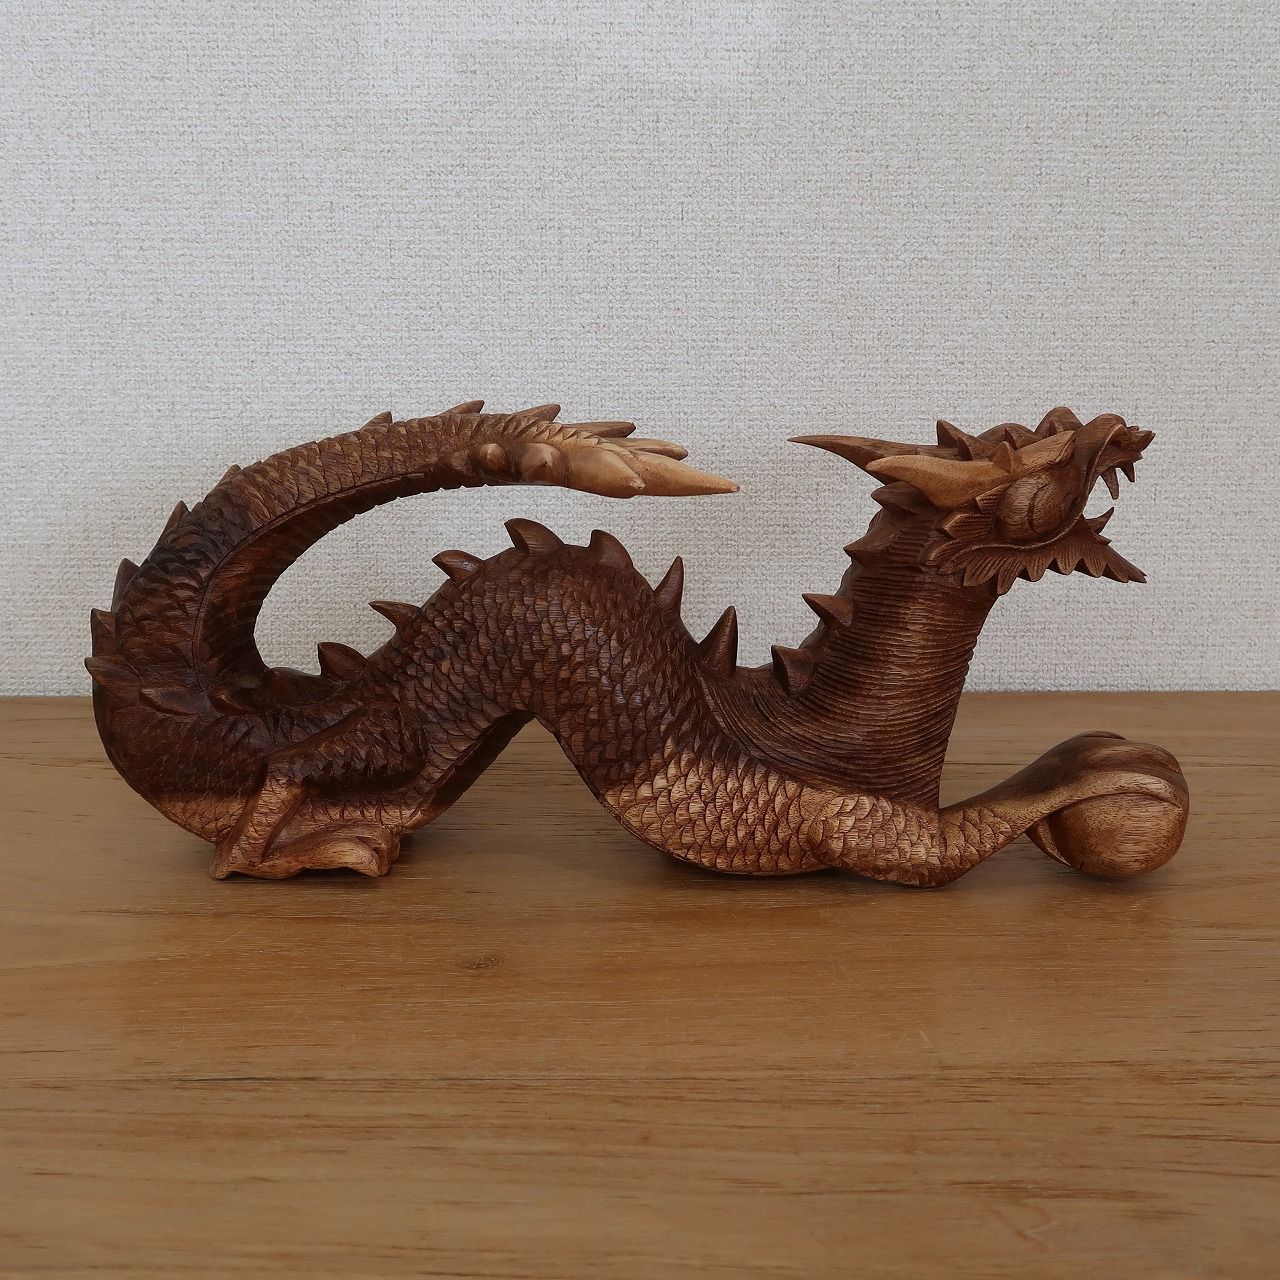 ドラゴンの木彫り 龍の木彫り スワール無垢材 左向き 40cm 竜の木彫り